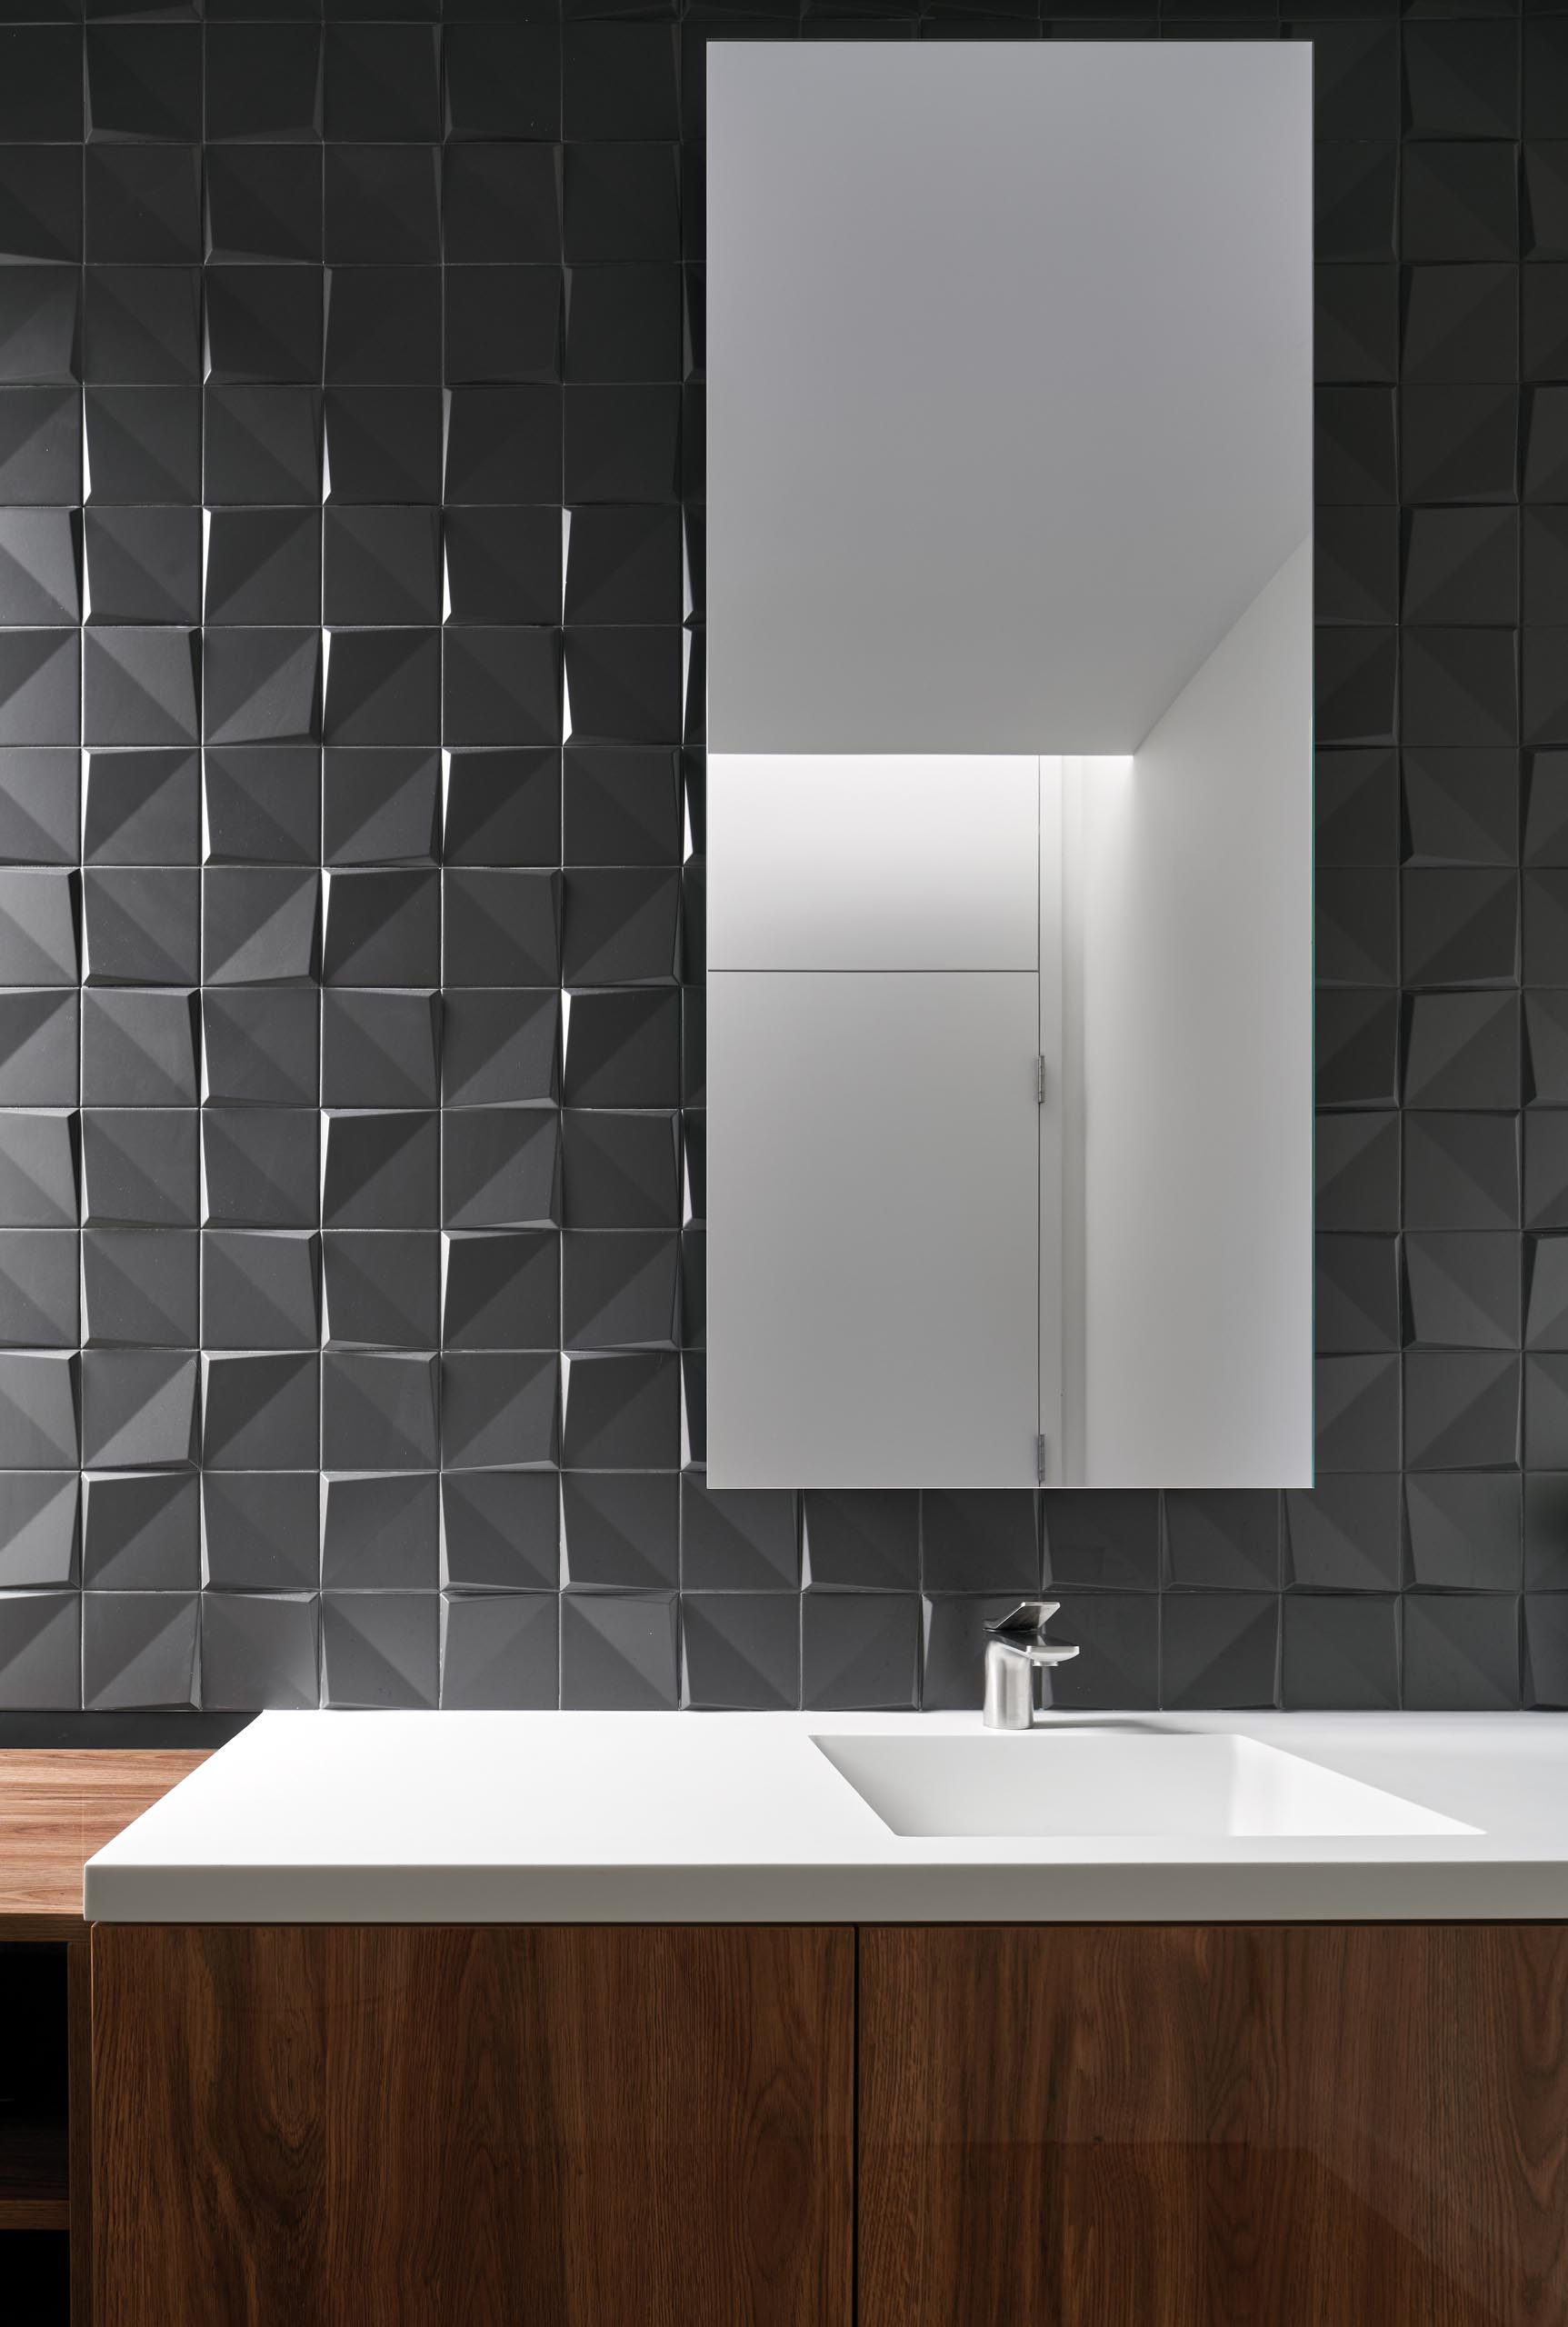 Современная серая и деревянная ванная комната с трехмерной плиткой, придающей текстуру стене.